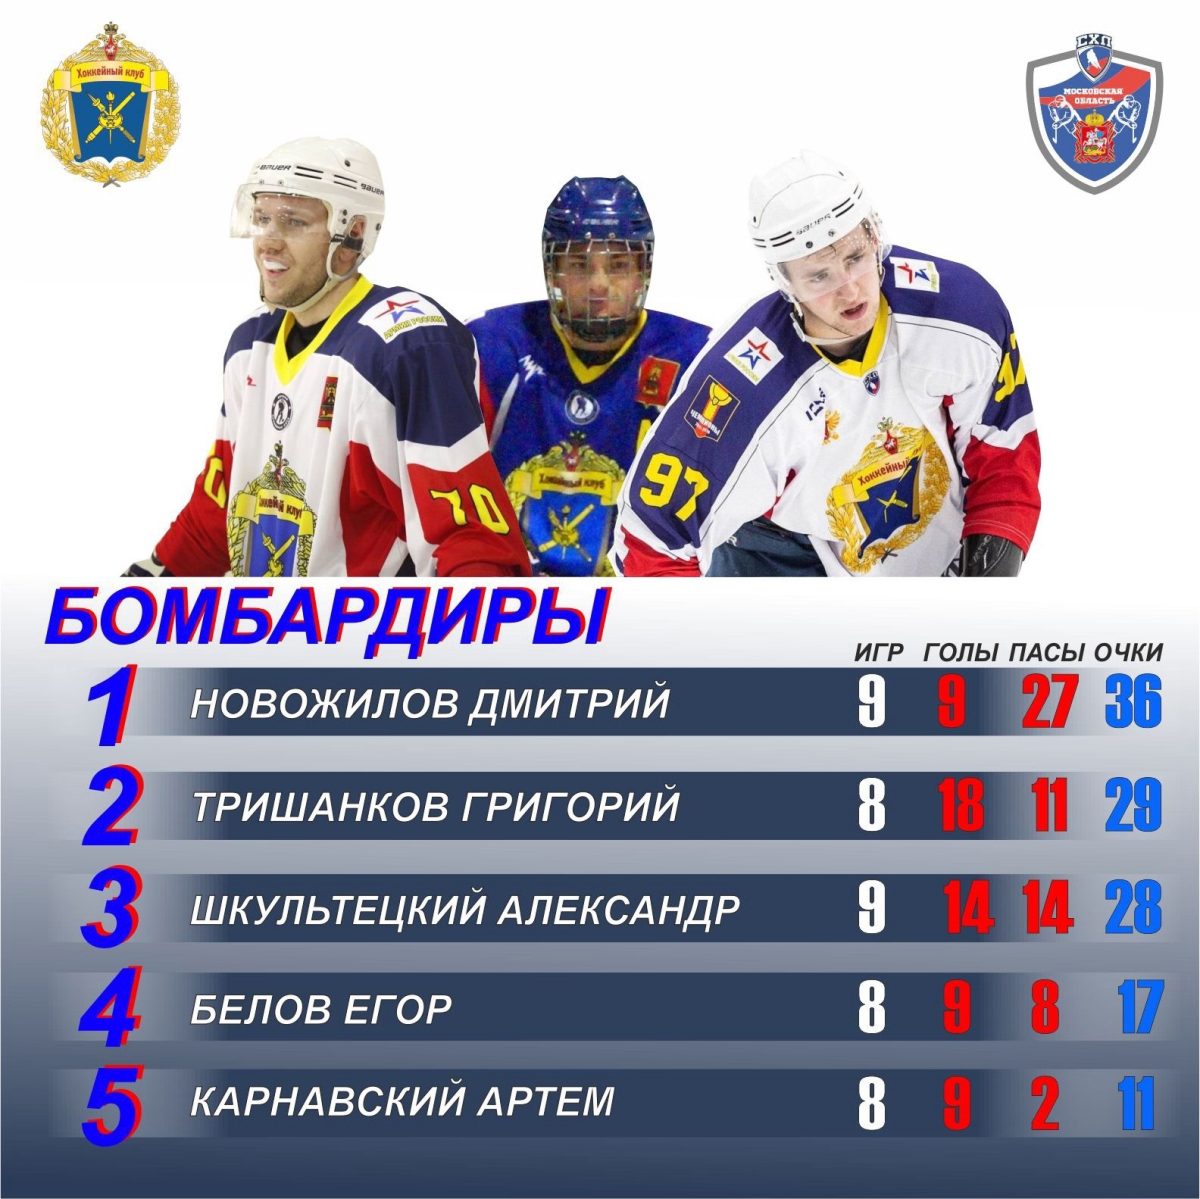 Тверские хоккеисты установили рекорд Студенческой лиги Москвы и Подмосковья